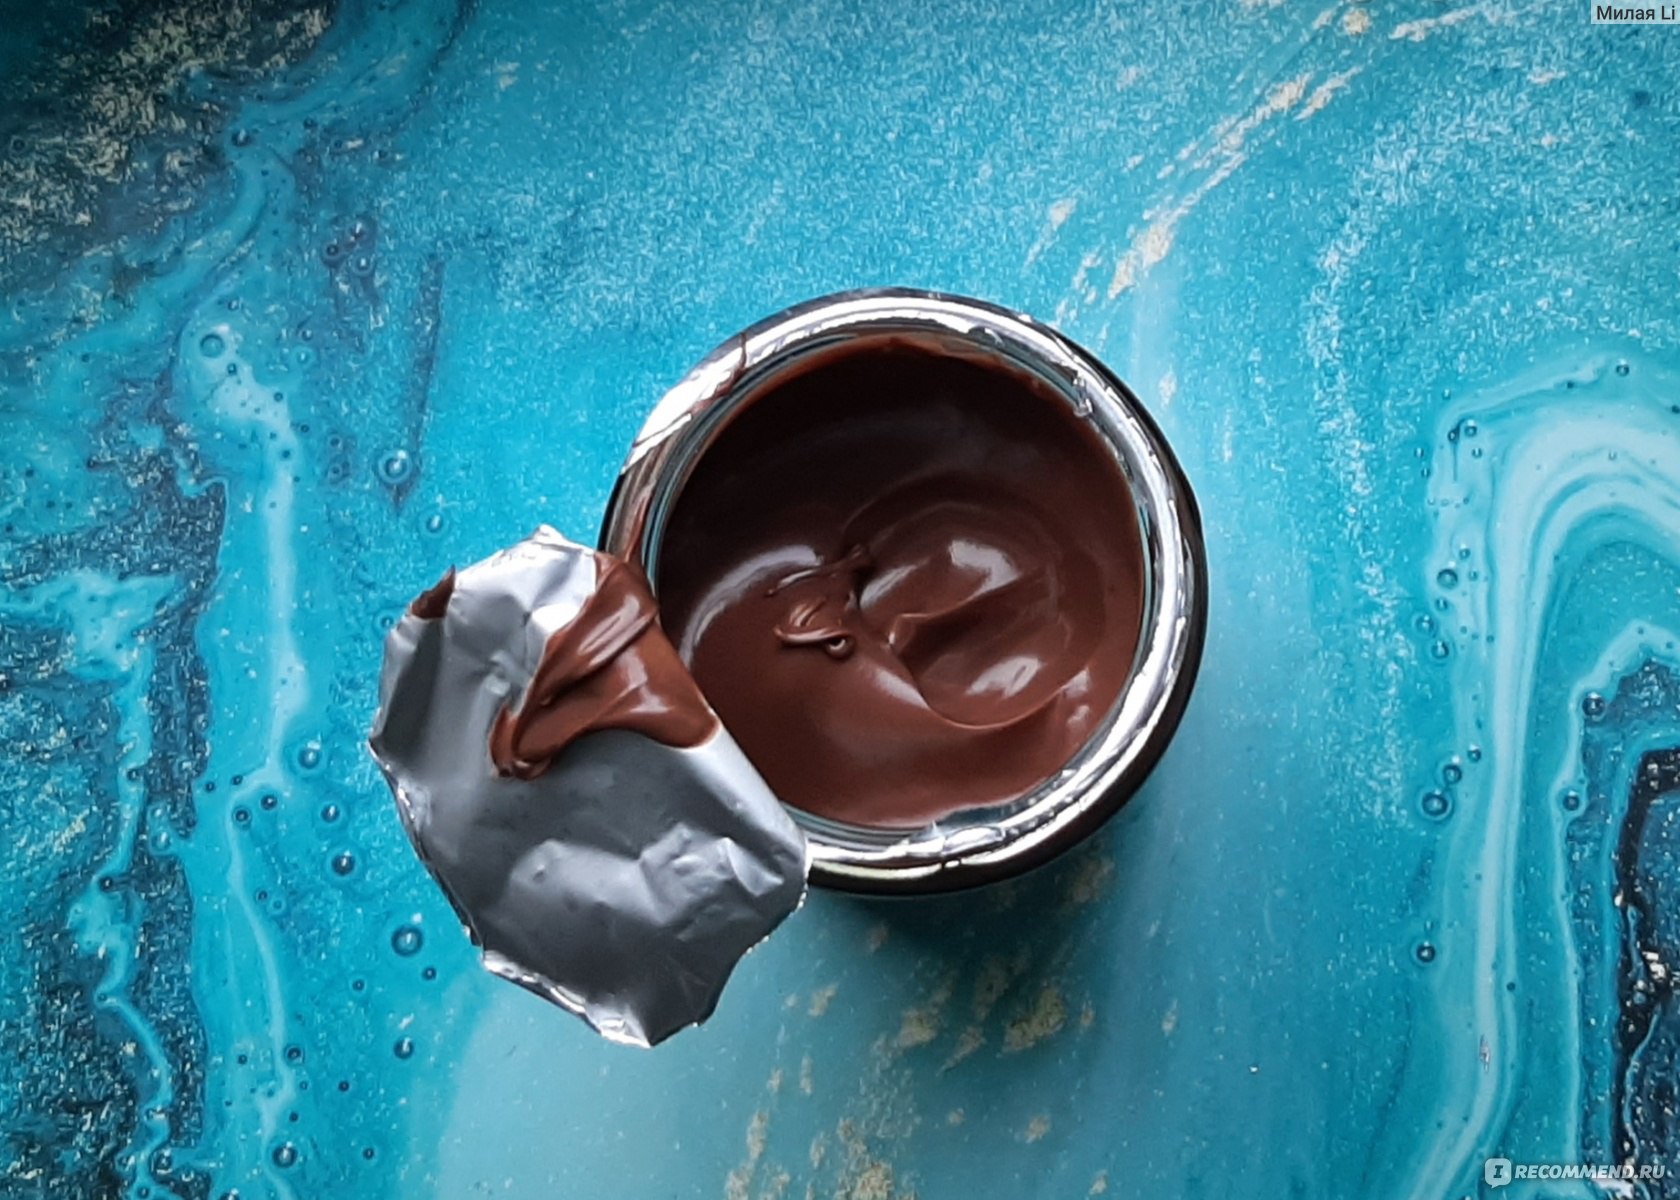 Шоколадная паста Milka Ореховая с добавлением какао фото